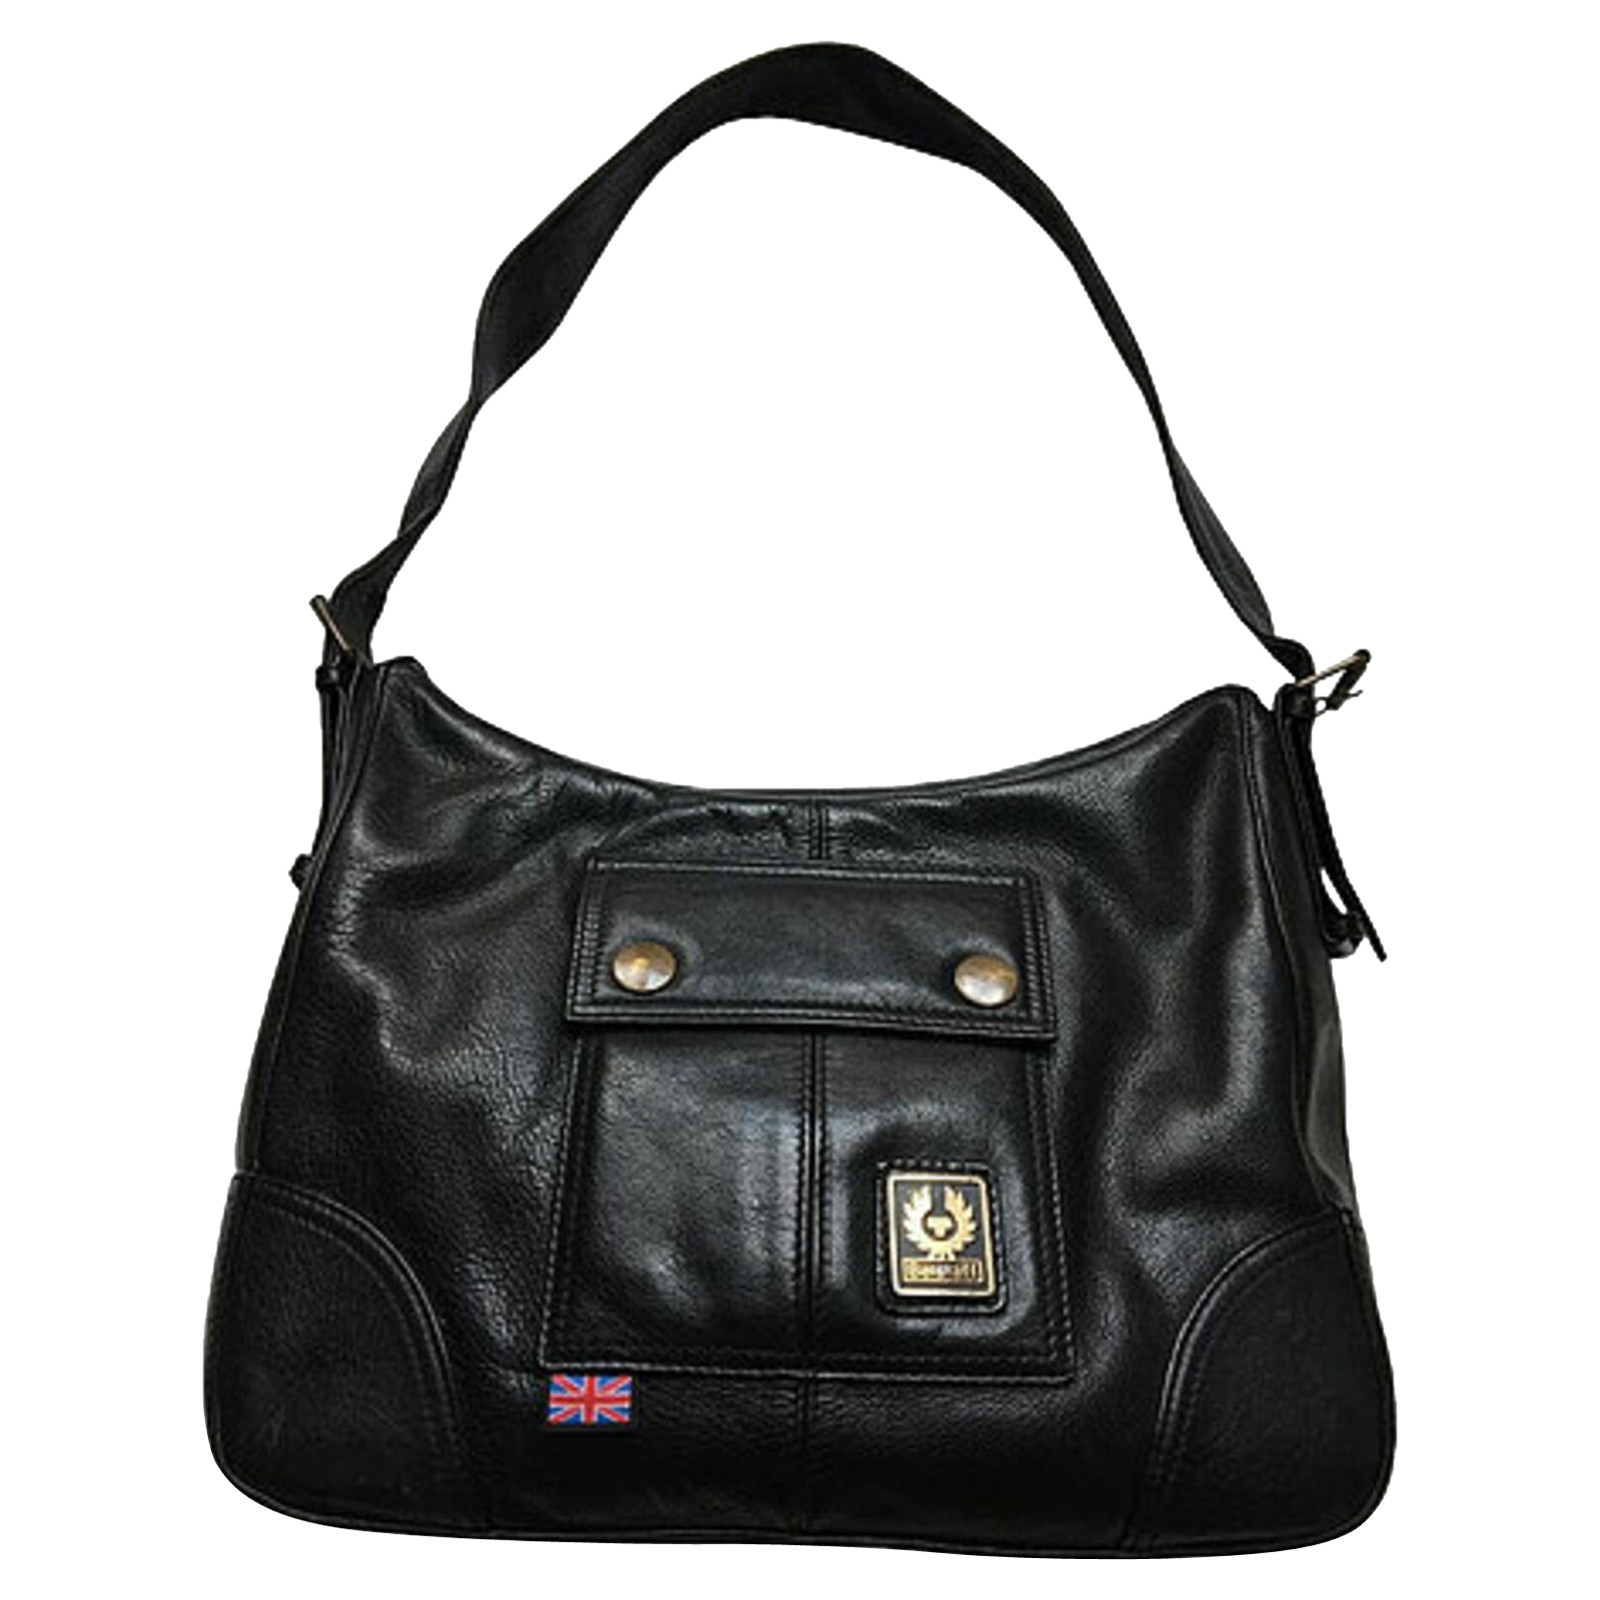 BELSTAFF Women's Handtasche aus Leder in Schwarz